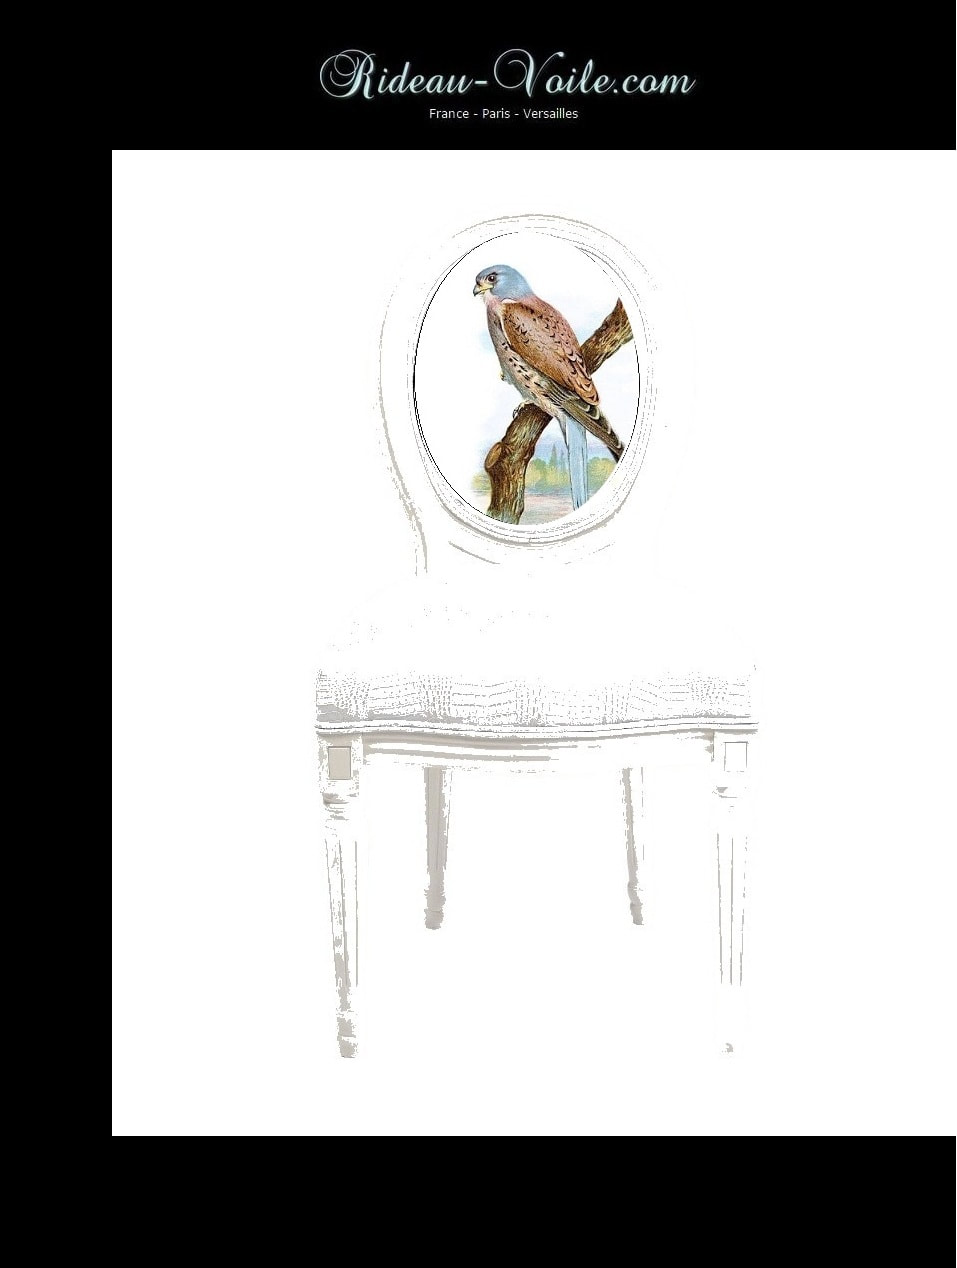 siège cabriolet de style louis 16 xvi XVI Empire décoration fauteuil chaise tissu tapisserie motif oiseaux tapissier médaillon bois hêtre ameublement lin coton dossier assise Paris Versailles France salon antiquaire